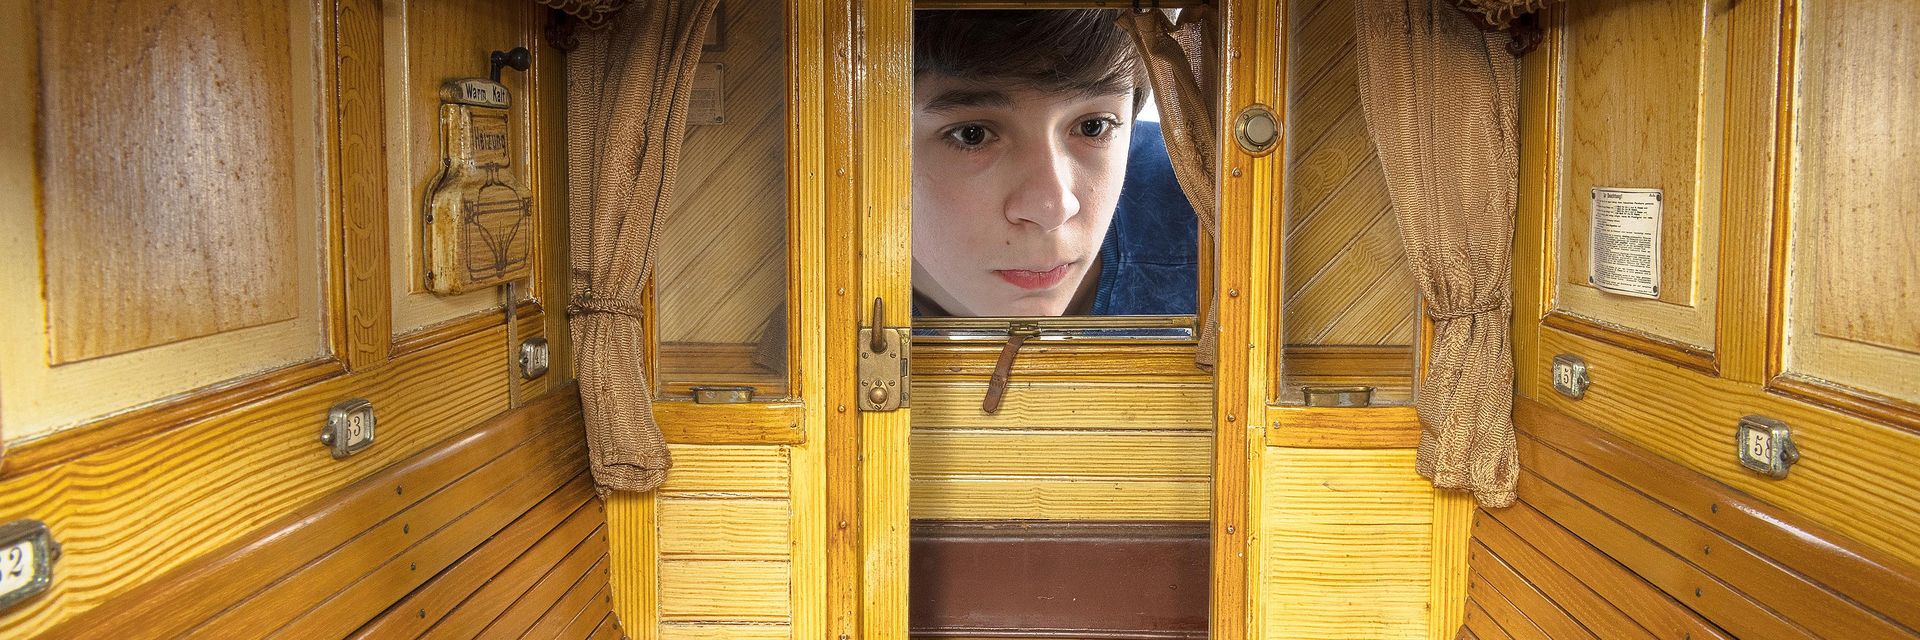 Ein kleiner Junge schaut durch ein Fenster in ein Modell eines Eisenbahnwaggons.